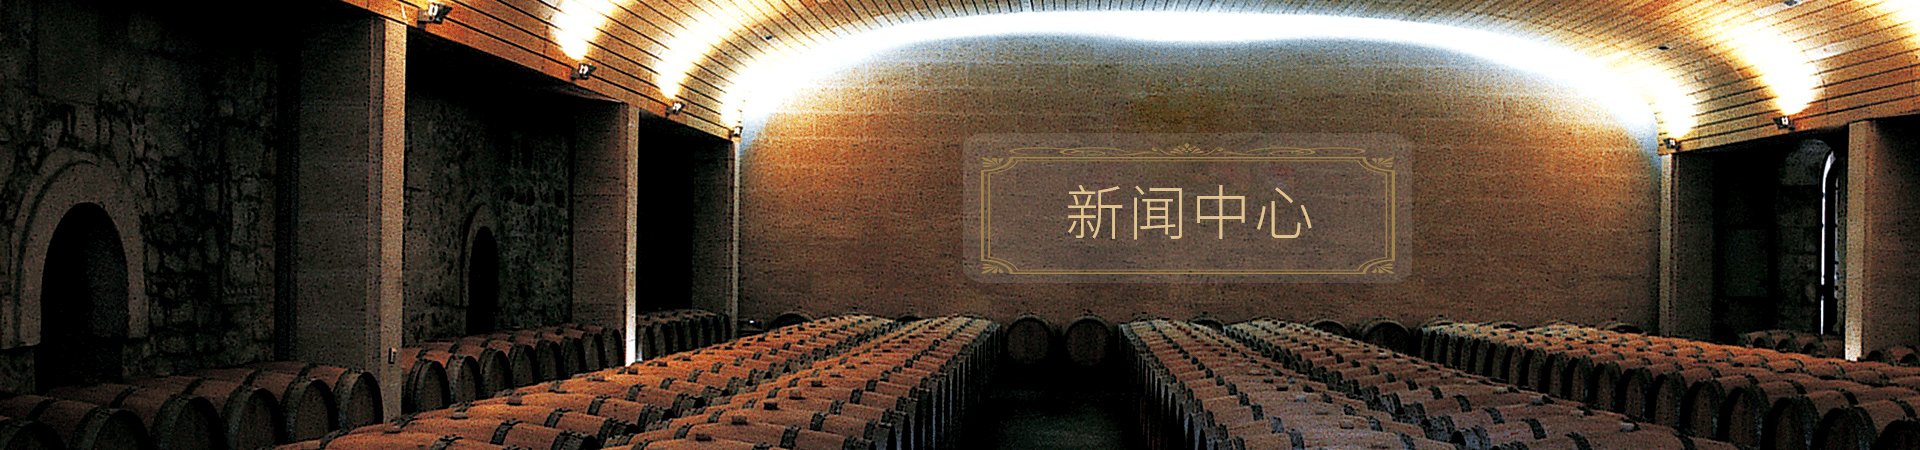 青島紅酒盒|青島紅酒木盒|青島紅酒皮盒|青島紅酒紙盒|青島葡萄酒盒